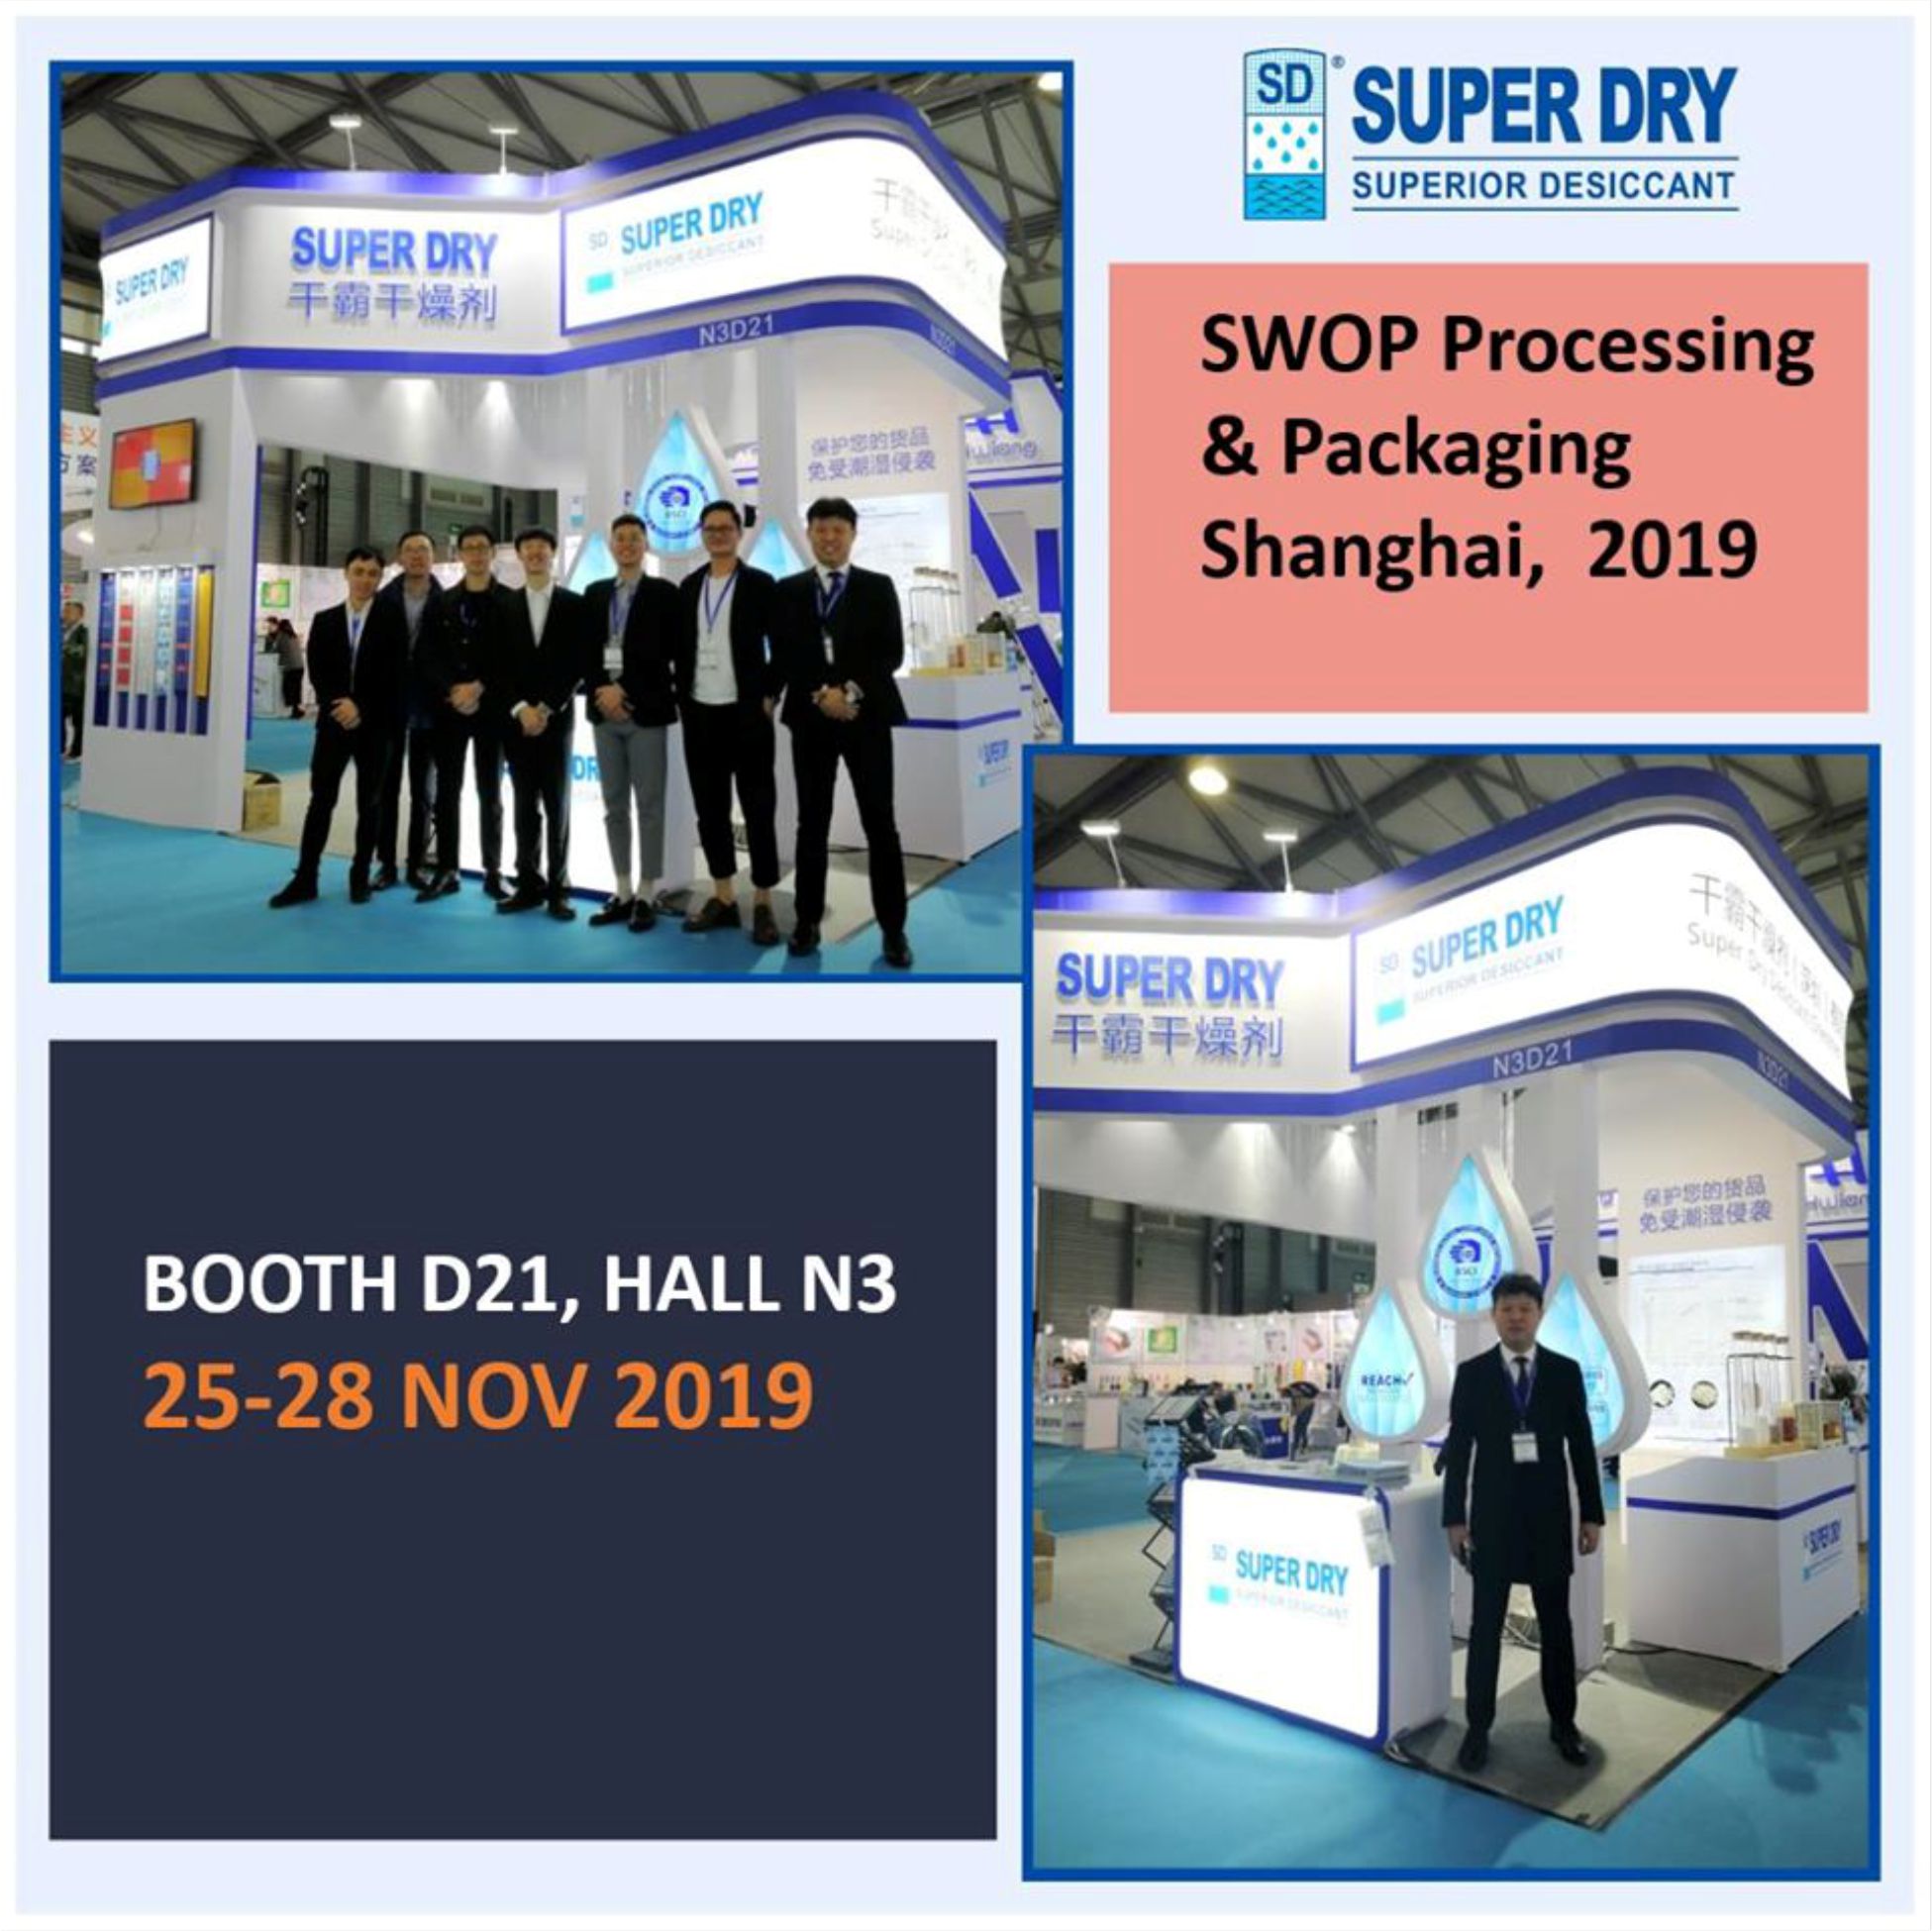 #SWOP Processing & Packaging in Shanghai